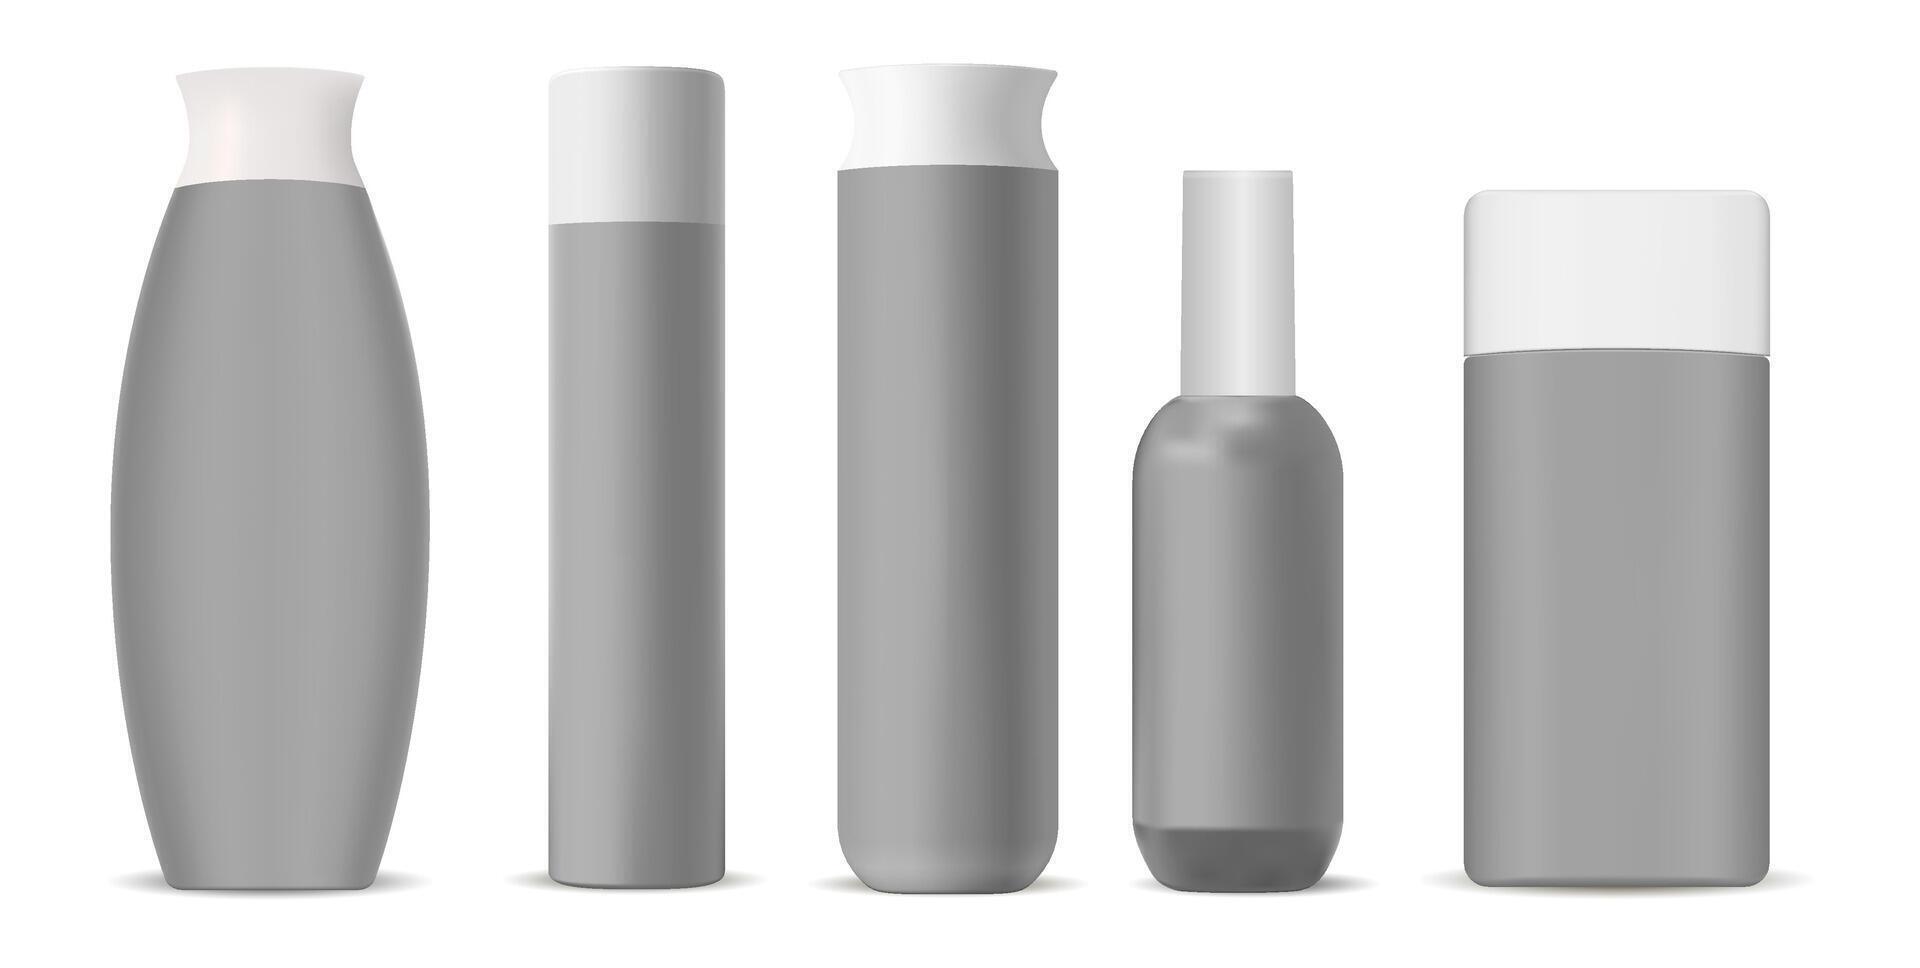 kunstmatig flessen mockup pak. reeks van modern vorm kunstmatig producten verpakking containers voor verschillend producten. 3d illustratie. vector